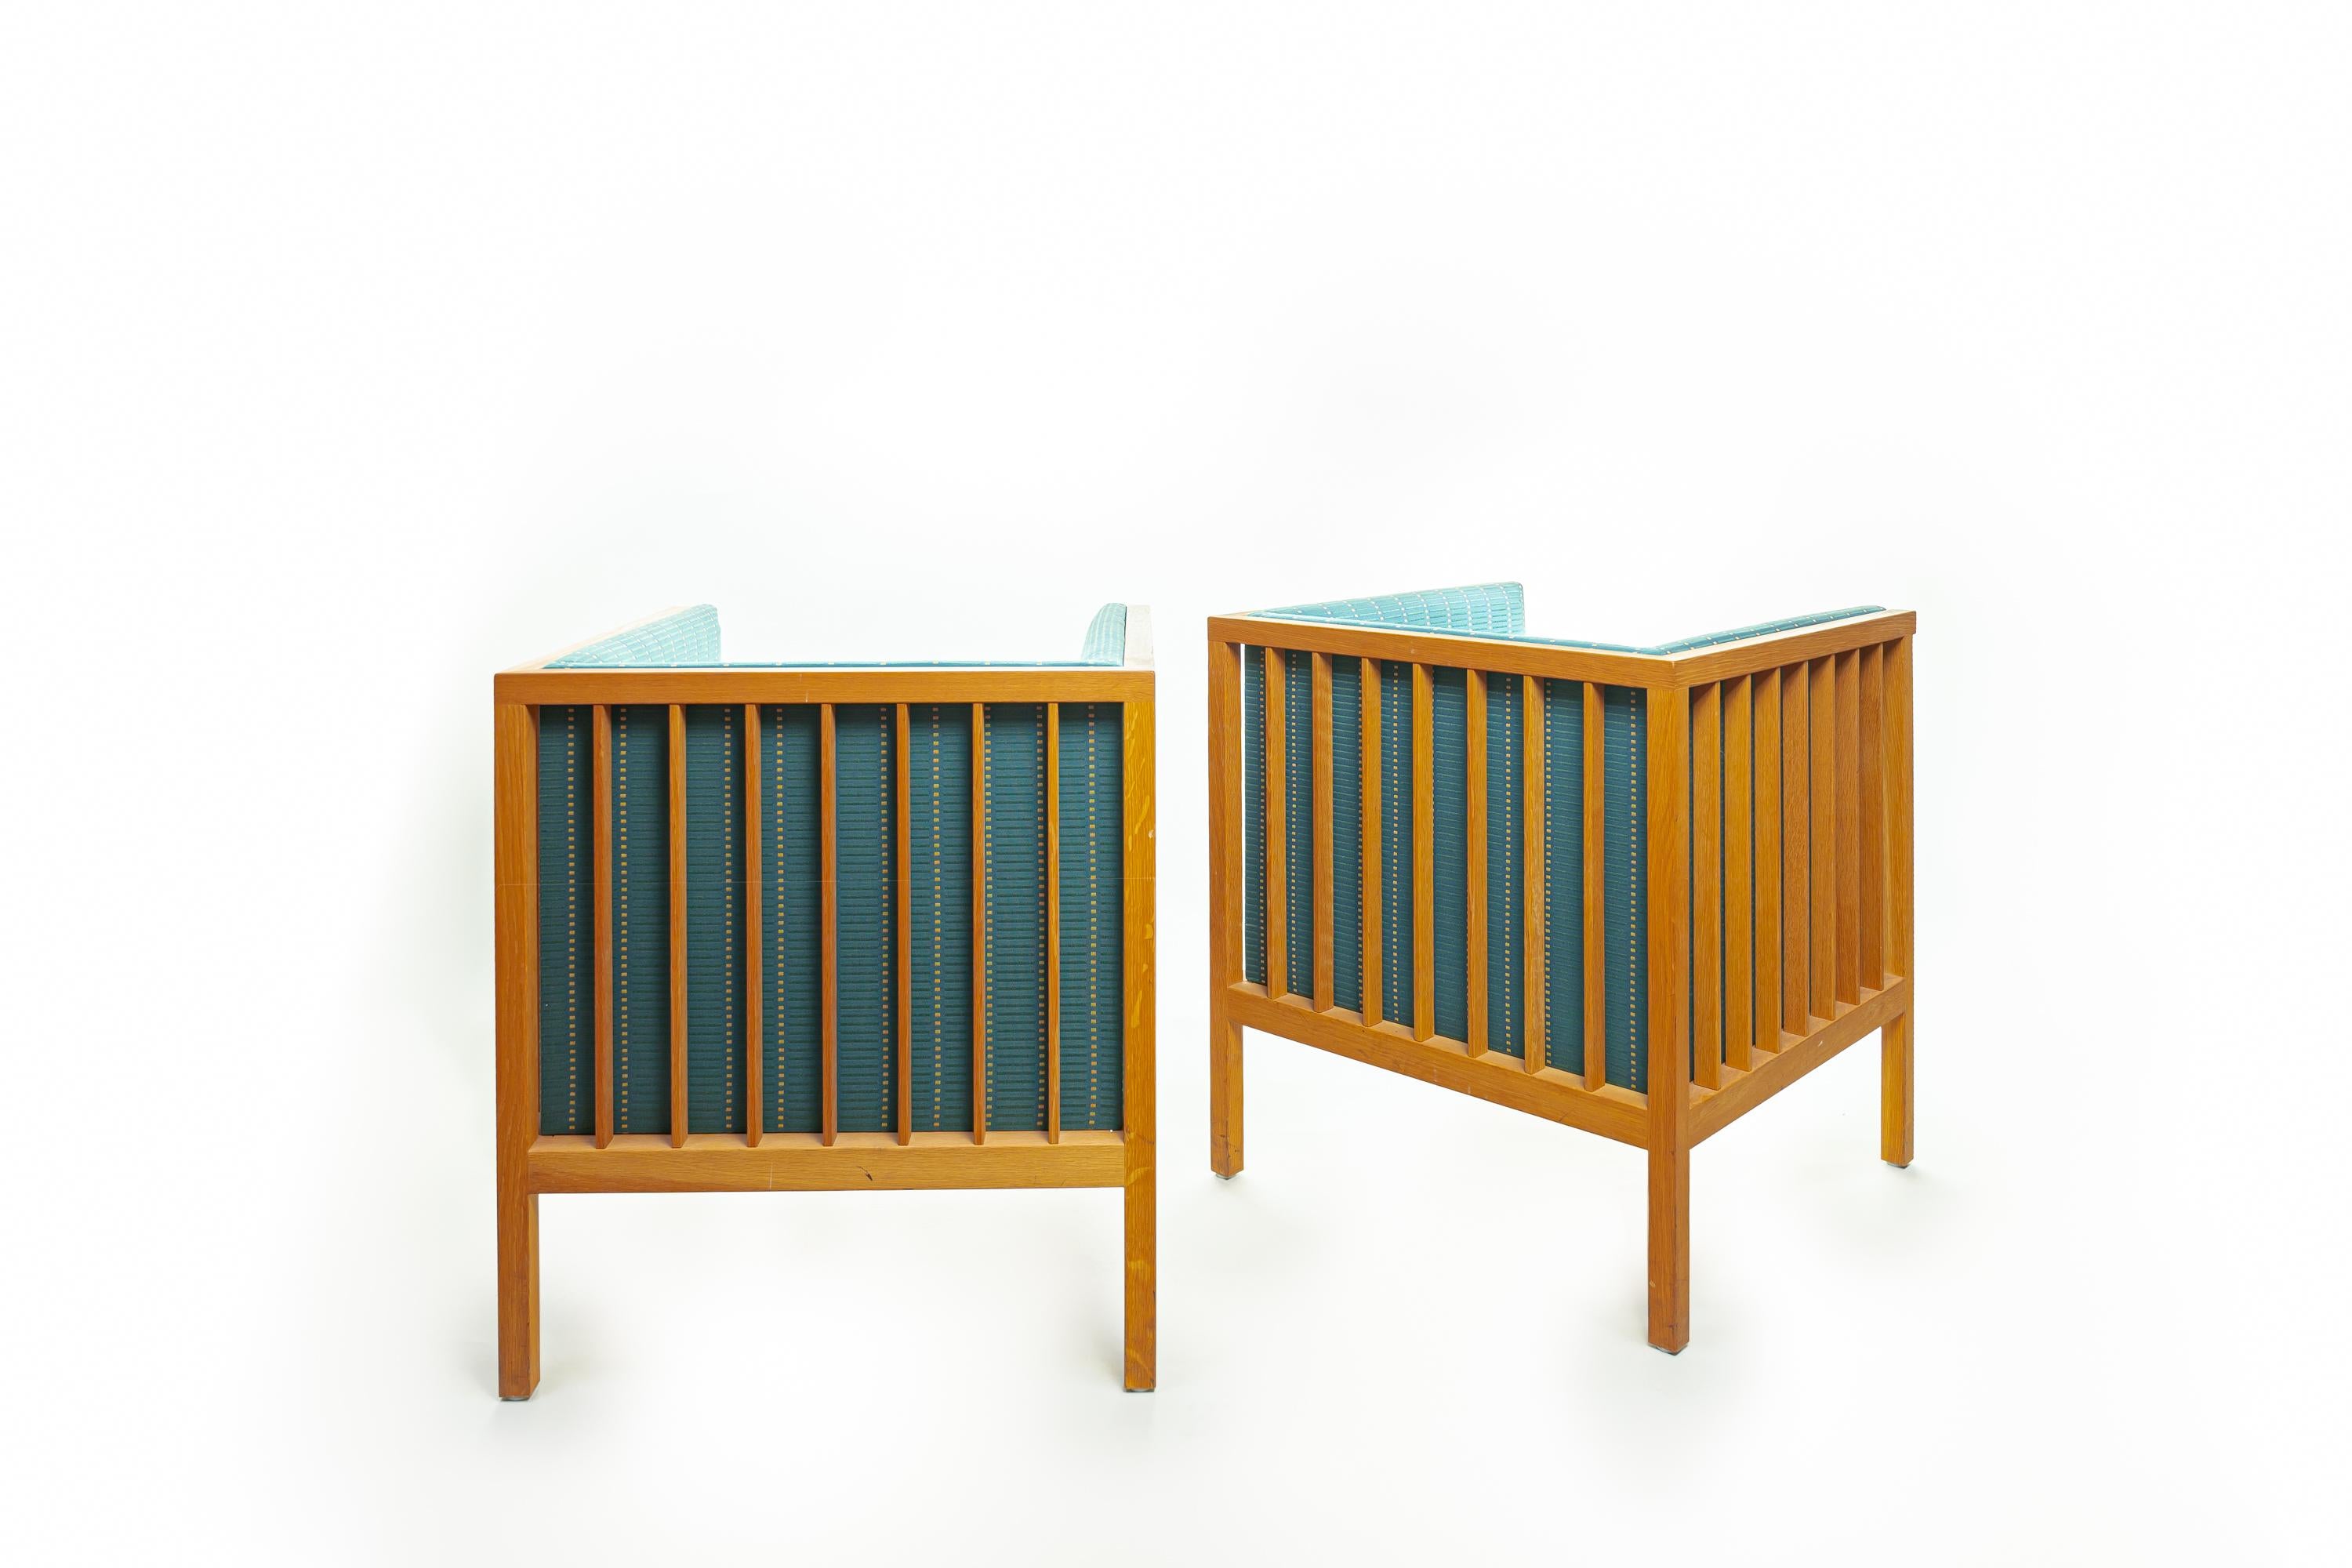 Les chaises Design/One de Åke Axelsson sont en chêne massif et le tissu a été dessiné par Eliel Saarinen. Les chaises ont été fabriquées dans les années 1980